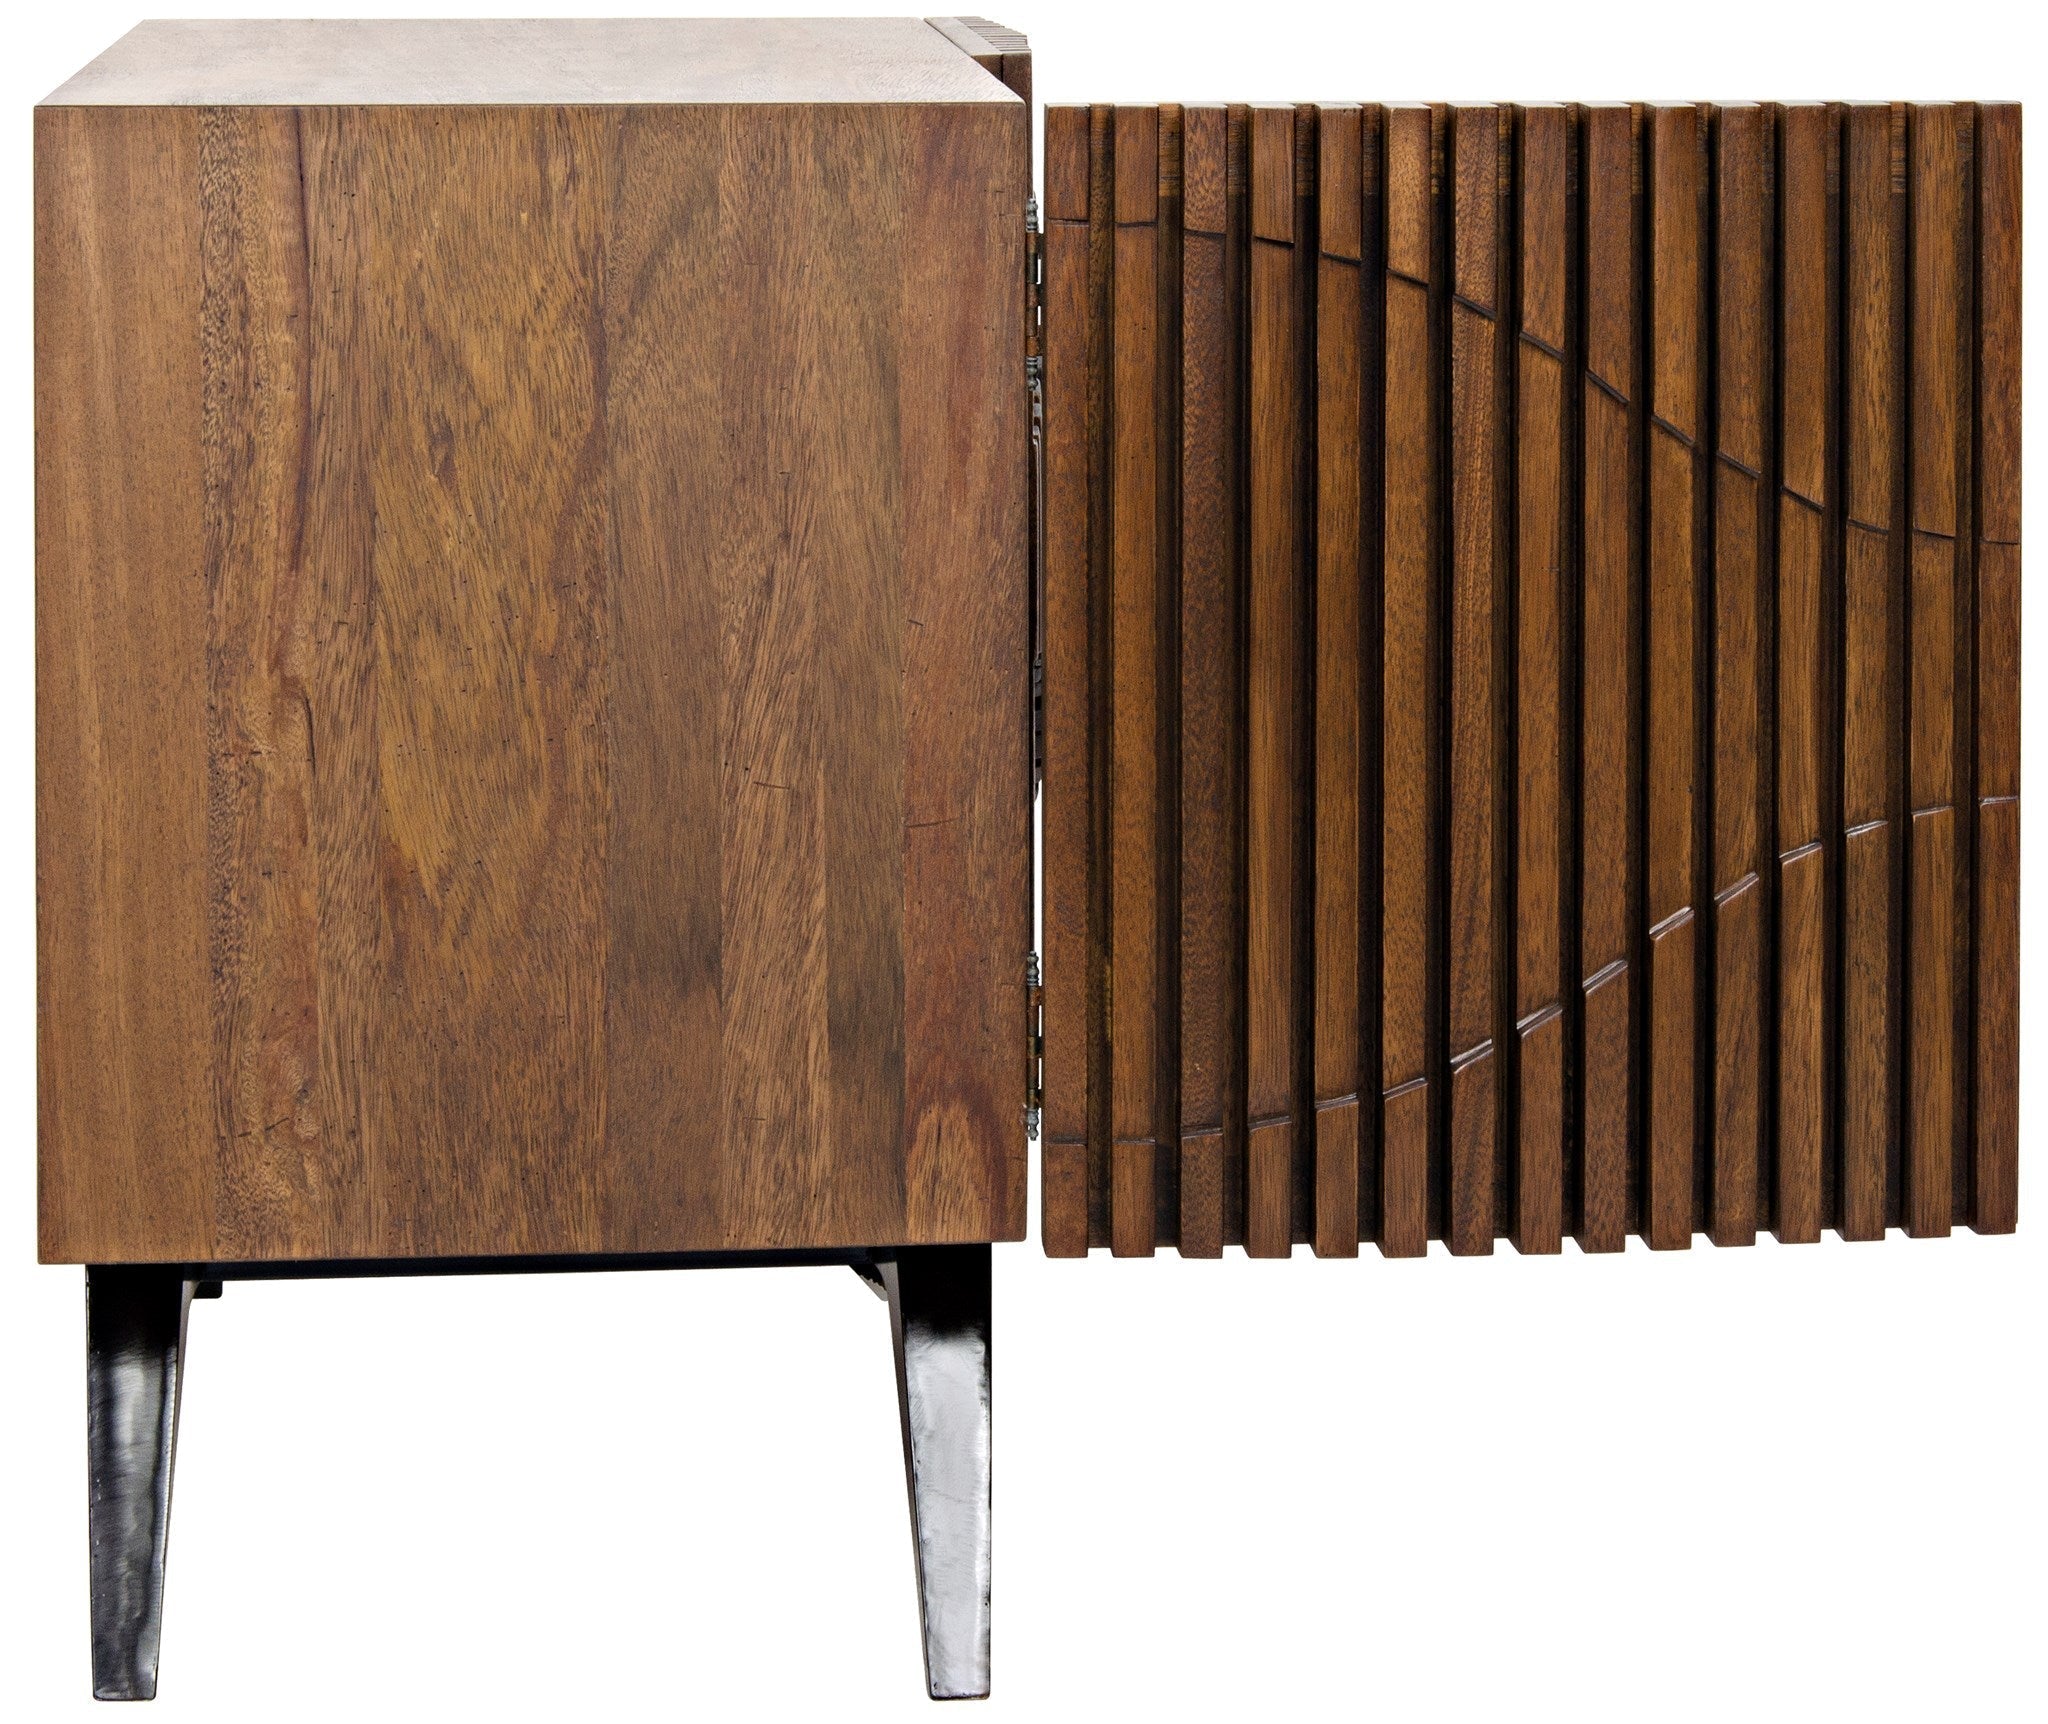 Illusion Single Sideboard - Walnut - - Furniture - Tipplergoods